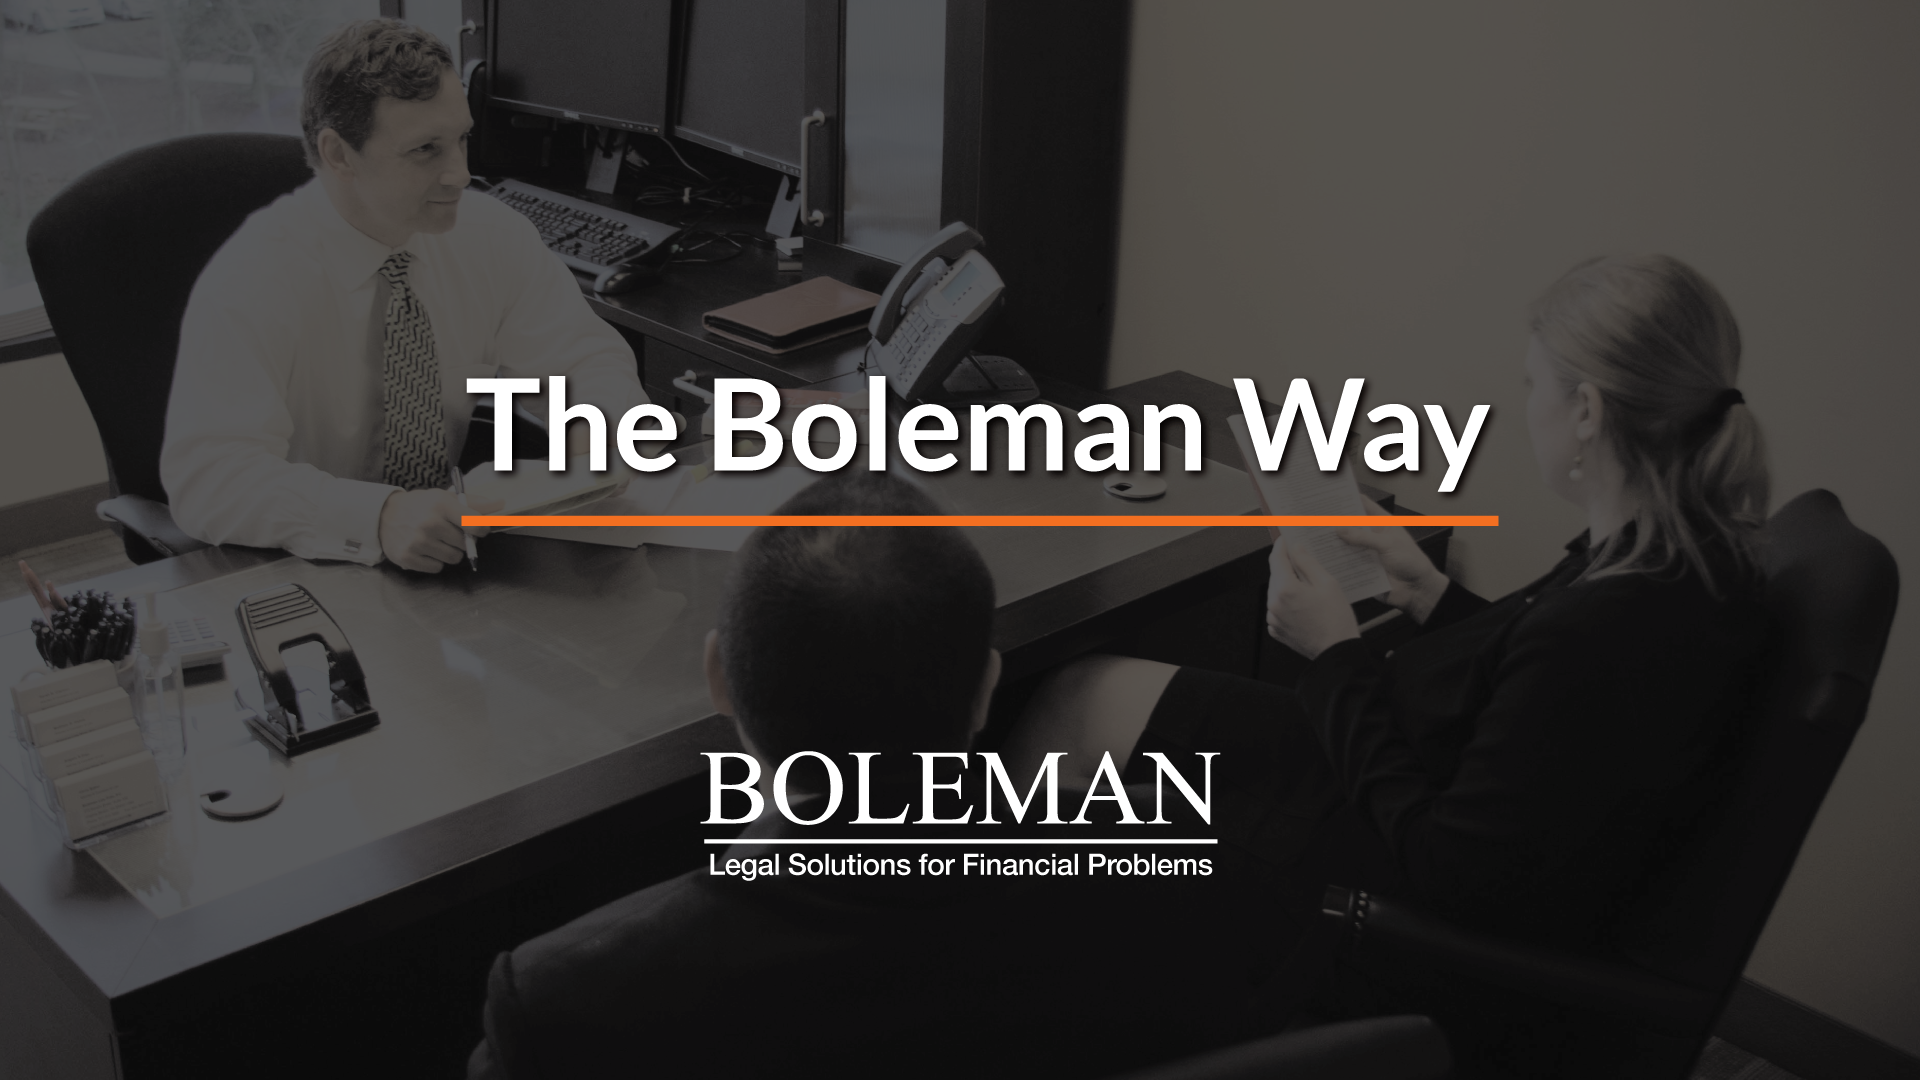 The Boleman Way